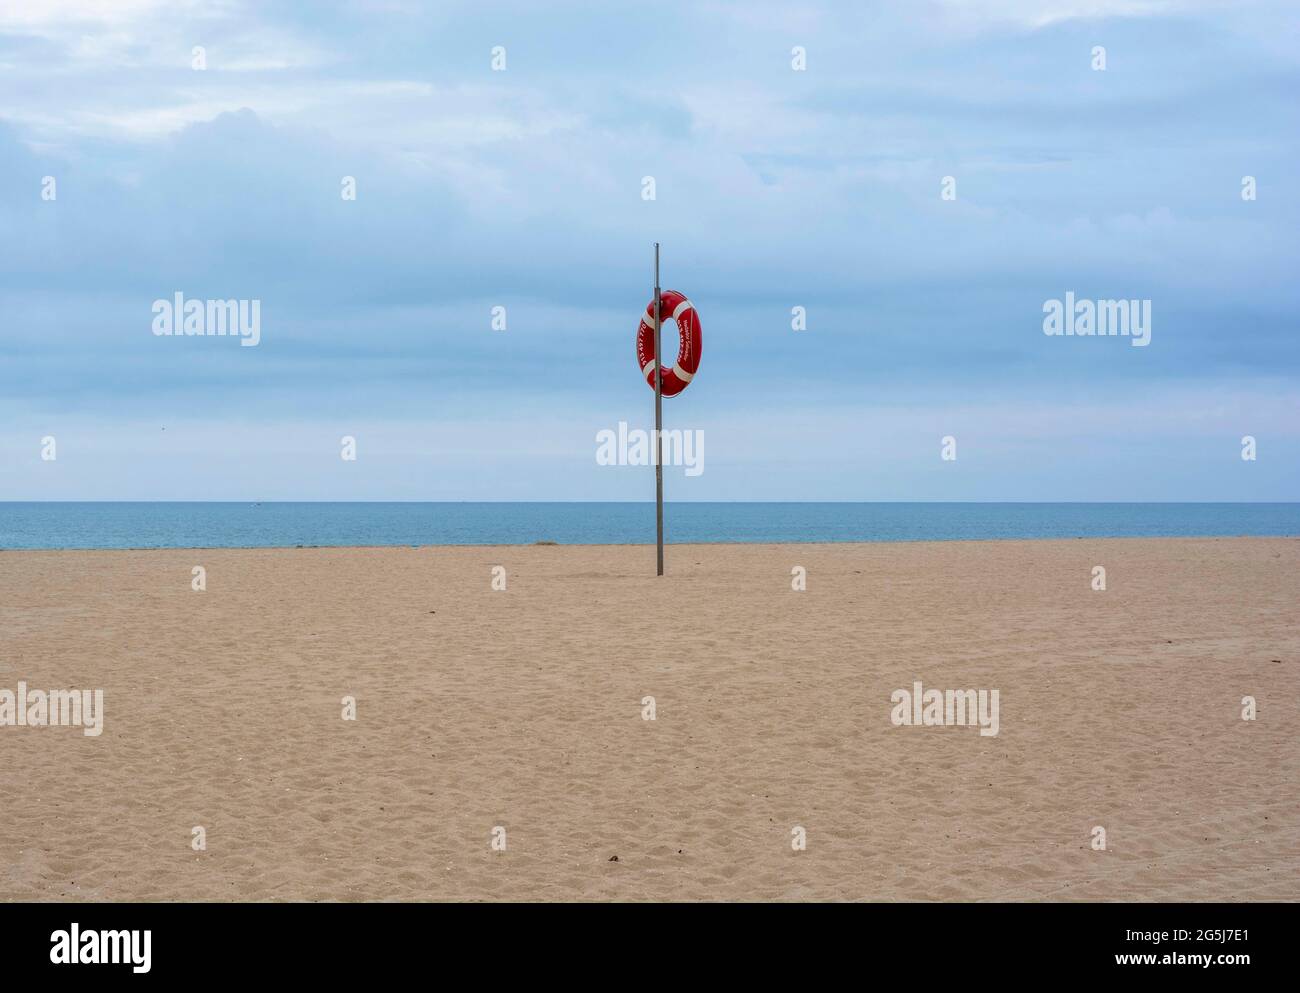 La semplicità è fondamentale. Spiaggia deserta a Vilamoura, Portogallo. Sebbene sia stato ripreso un po' di tempo, è opportuno dare le attuali restrizioni. Foto Stock